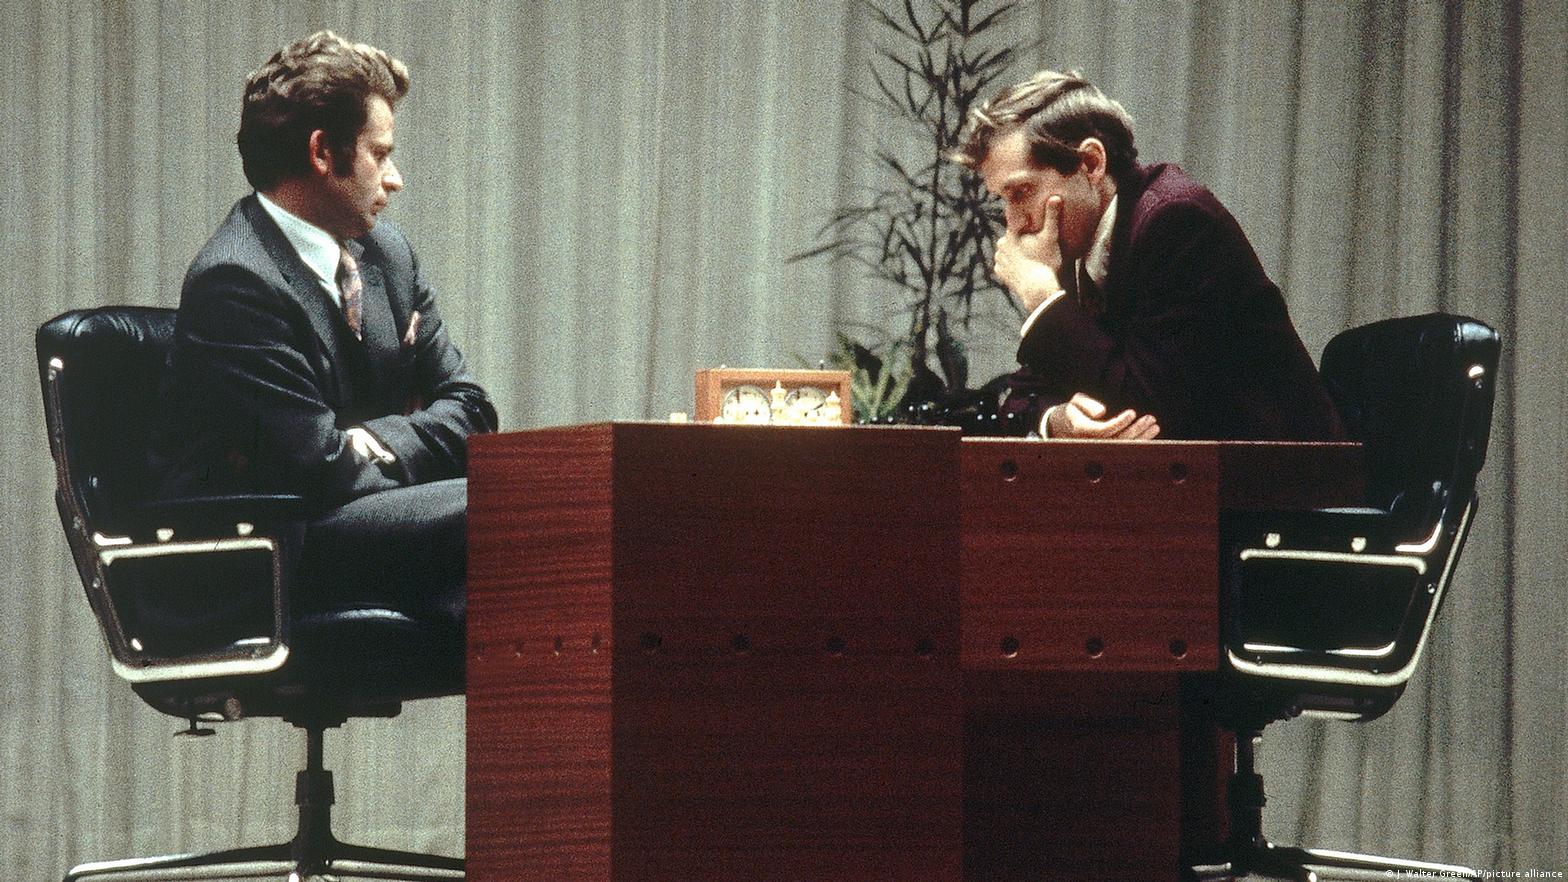 Ravens: Spassky vs Fischer an intriguing new play - review